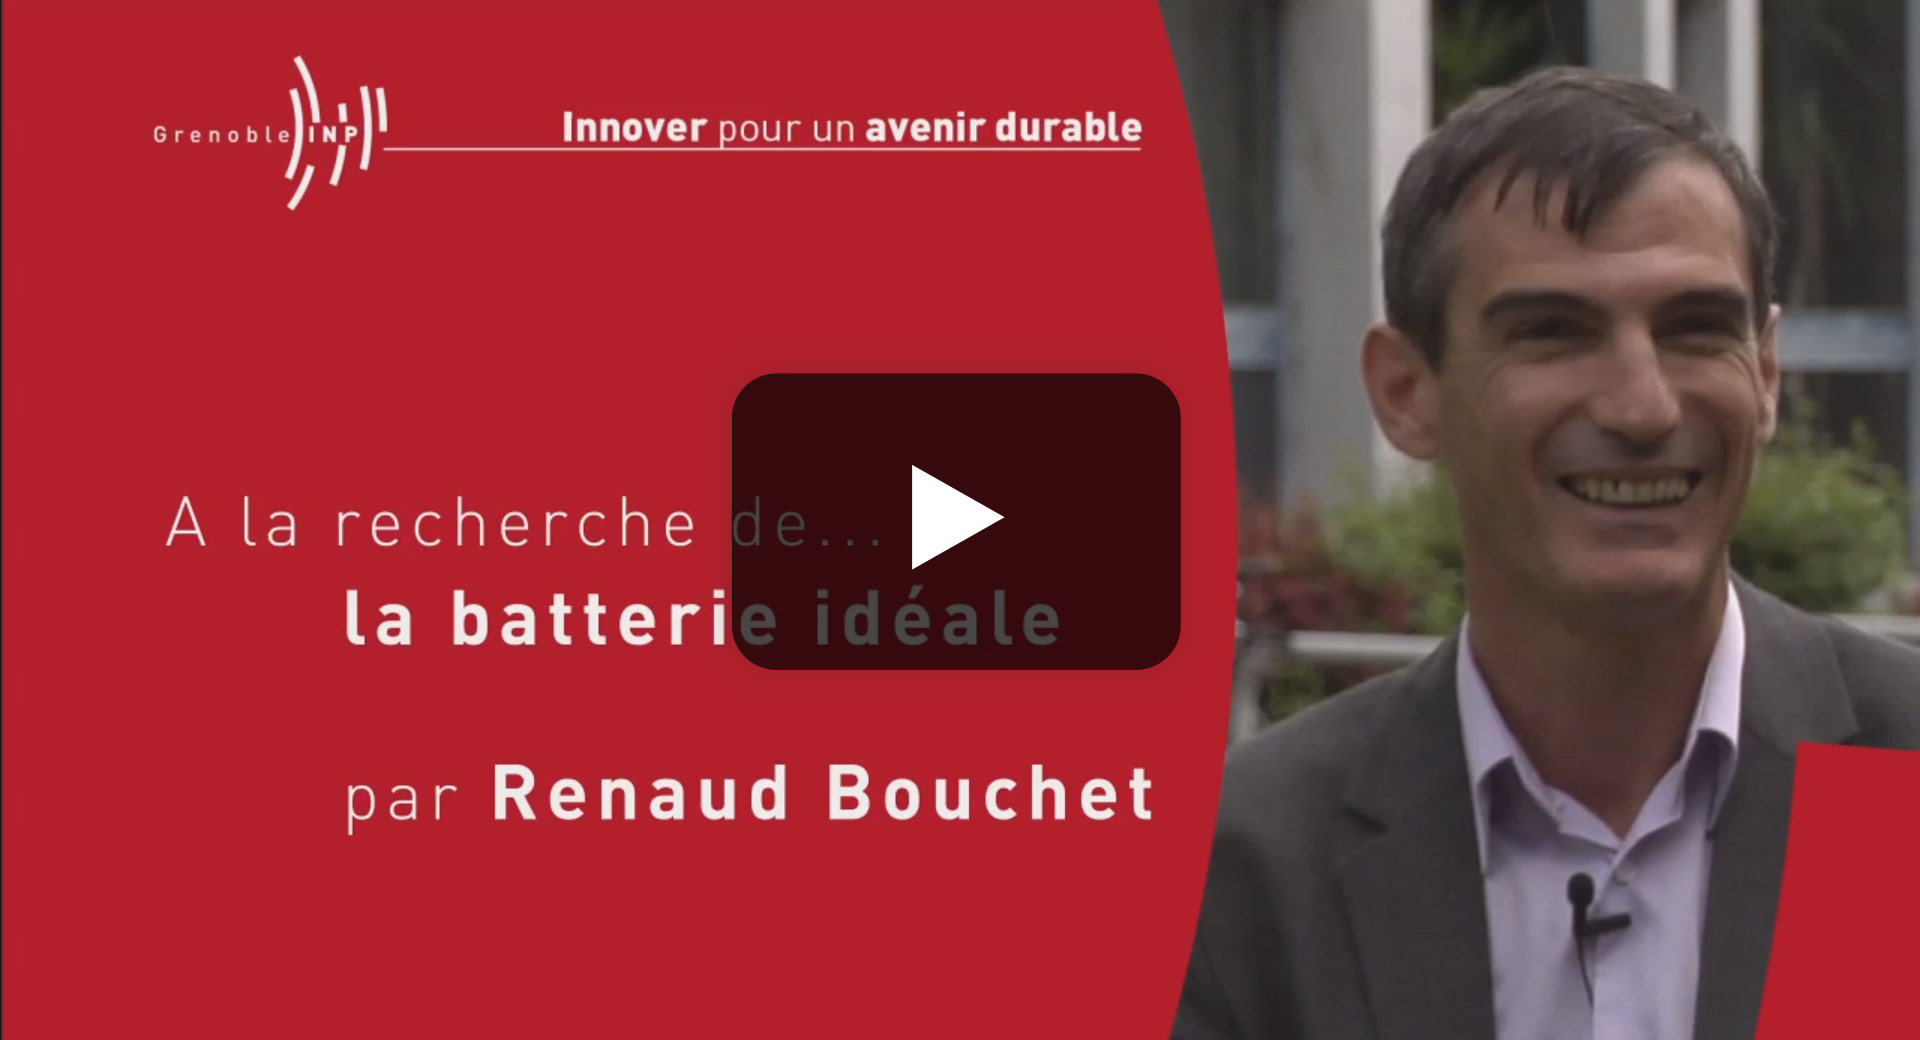 A la recherche de la batterie idéale par Renaud Bouchet